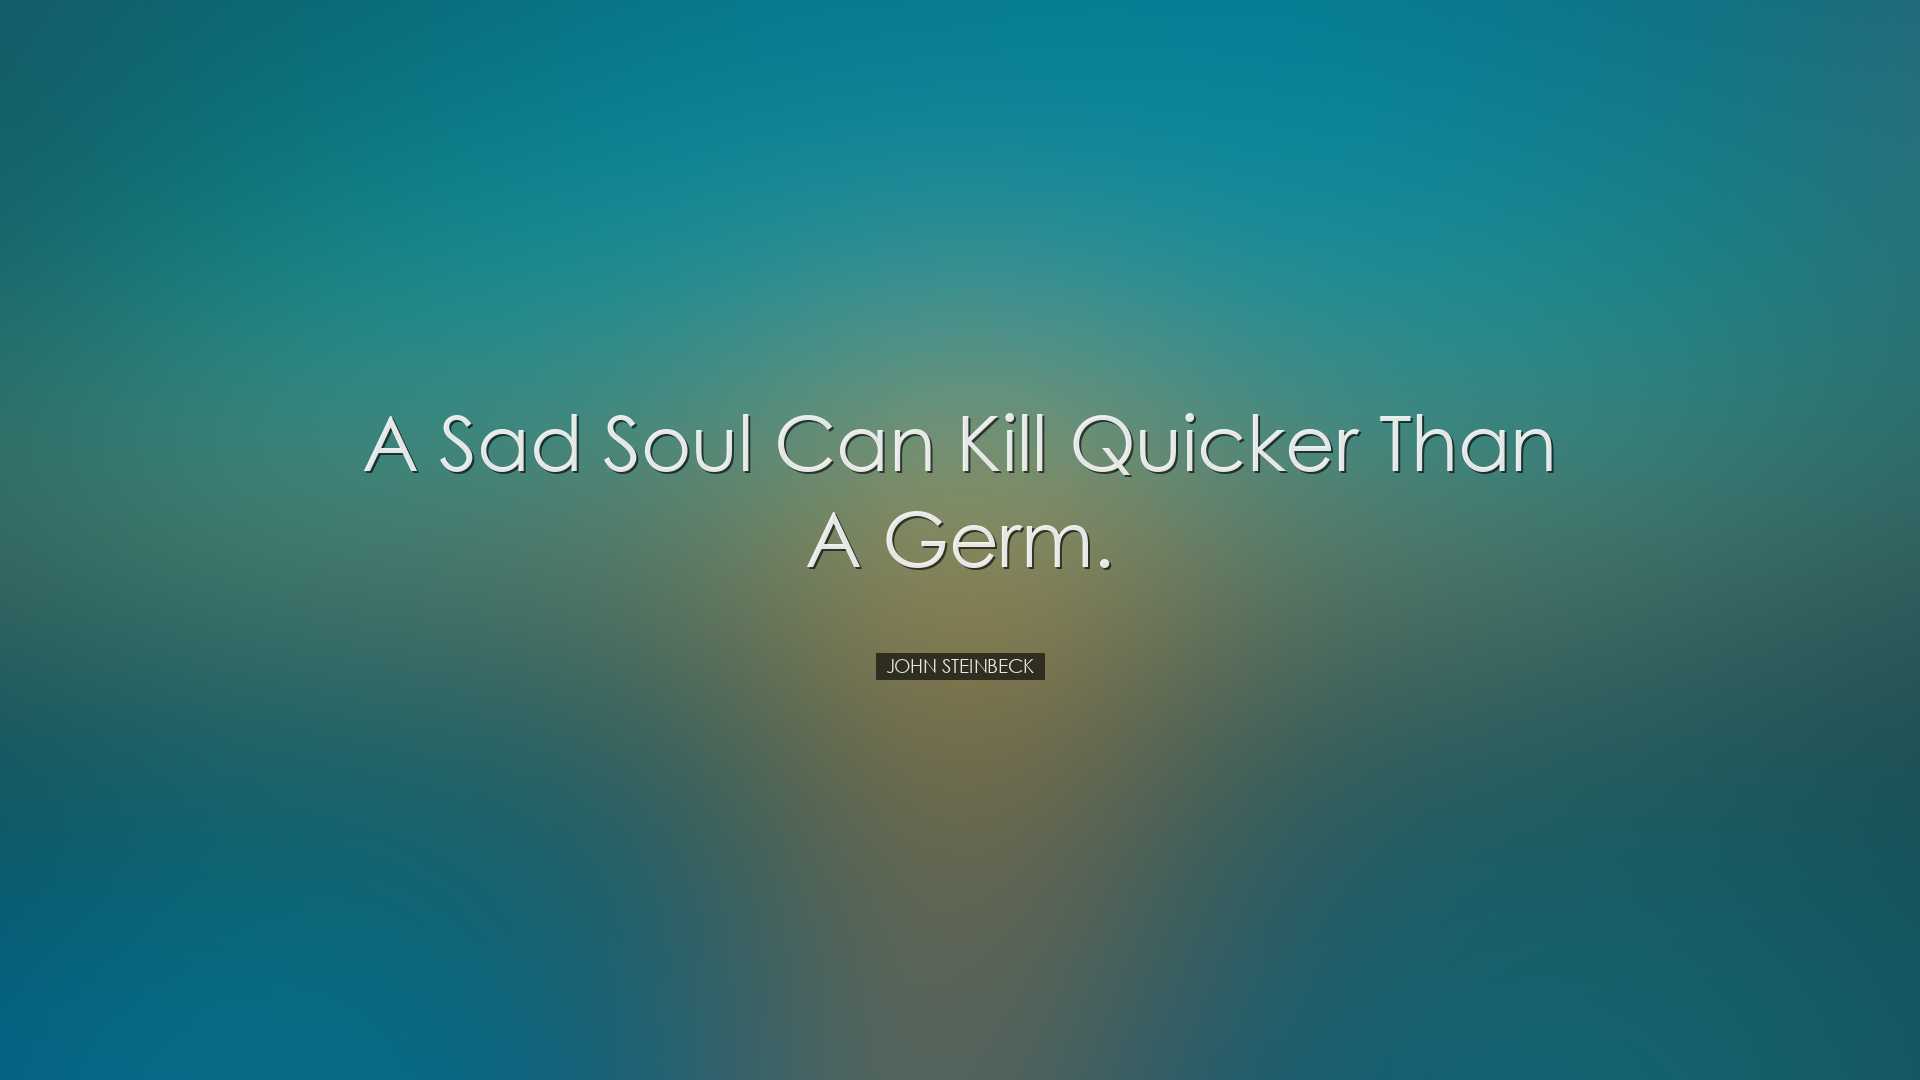 A sad soul can kill quicker than a germ. - John Steinbeck